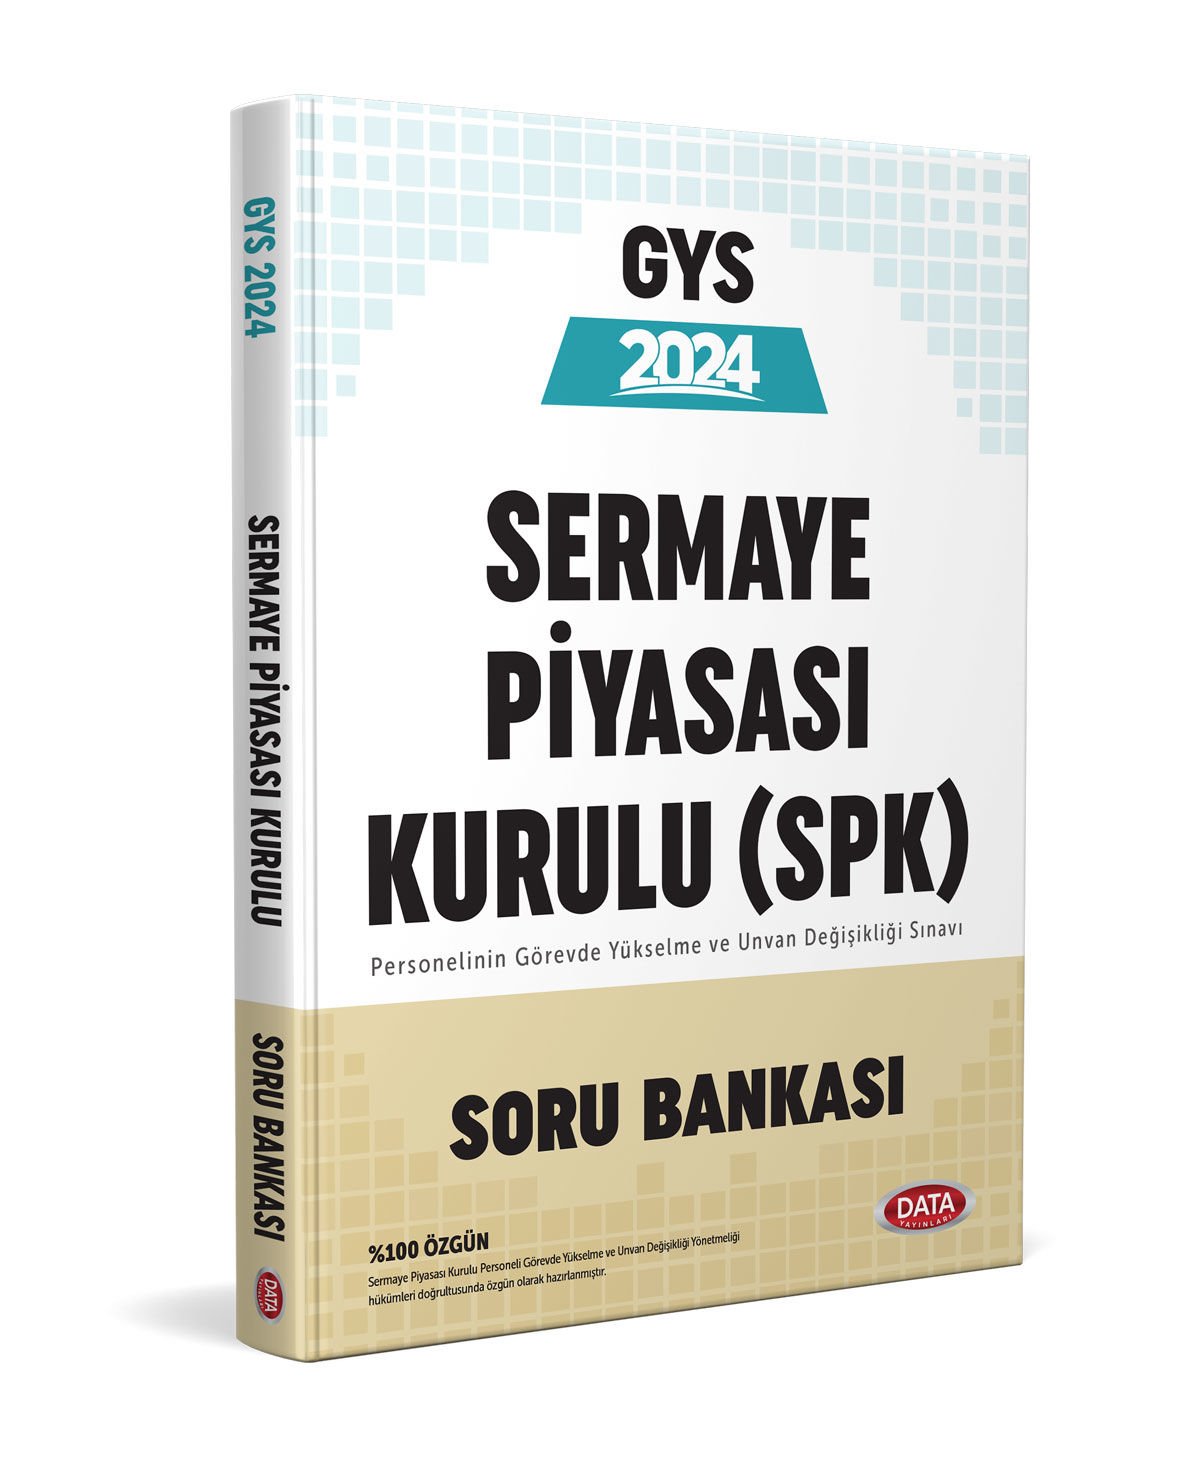 Sermaye Piyasa Kurulu (SPK) GYS Soru Bankası Data Yayınları